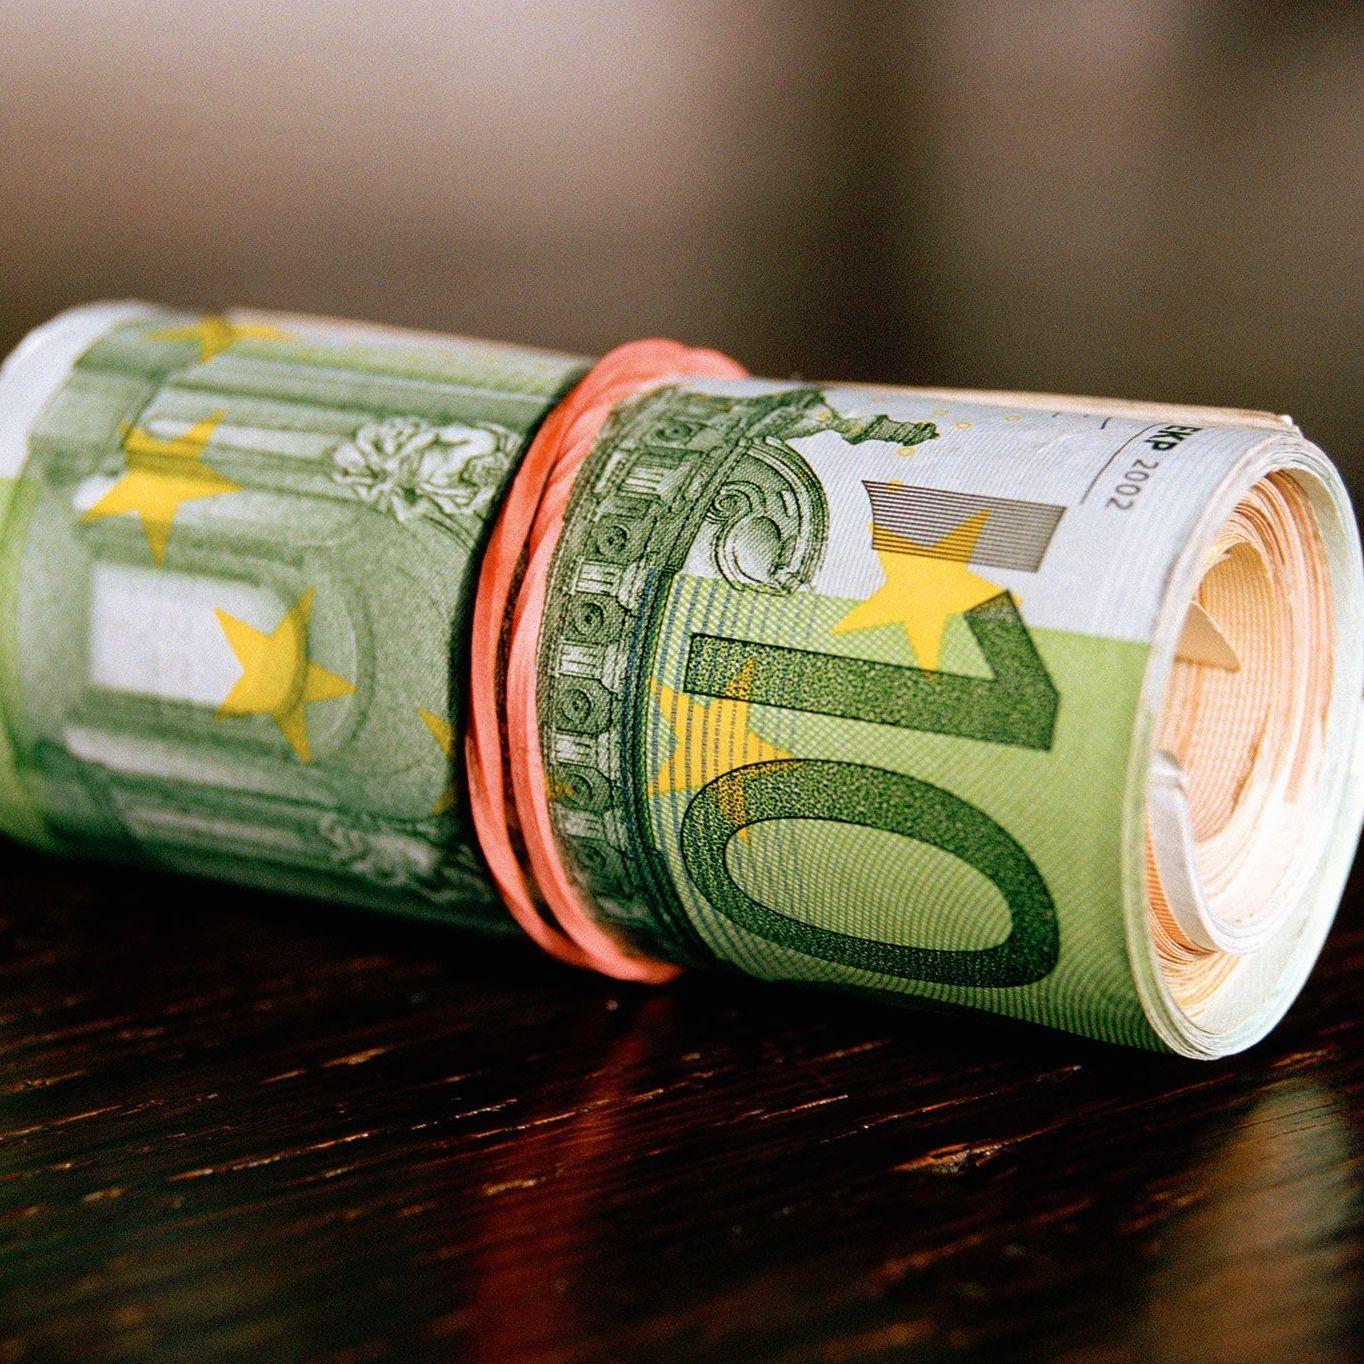 Ein mit einem Gummiband zusammengerolltes Bündel von verschiedenen Geldscheinen liegt auf einer reflektierenden Oberfläche.